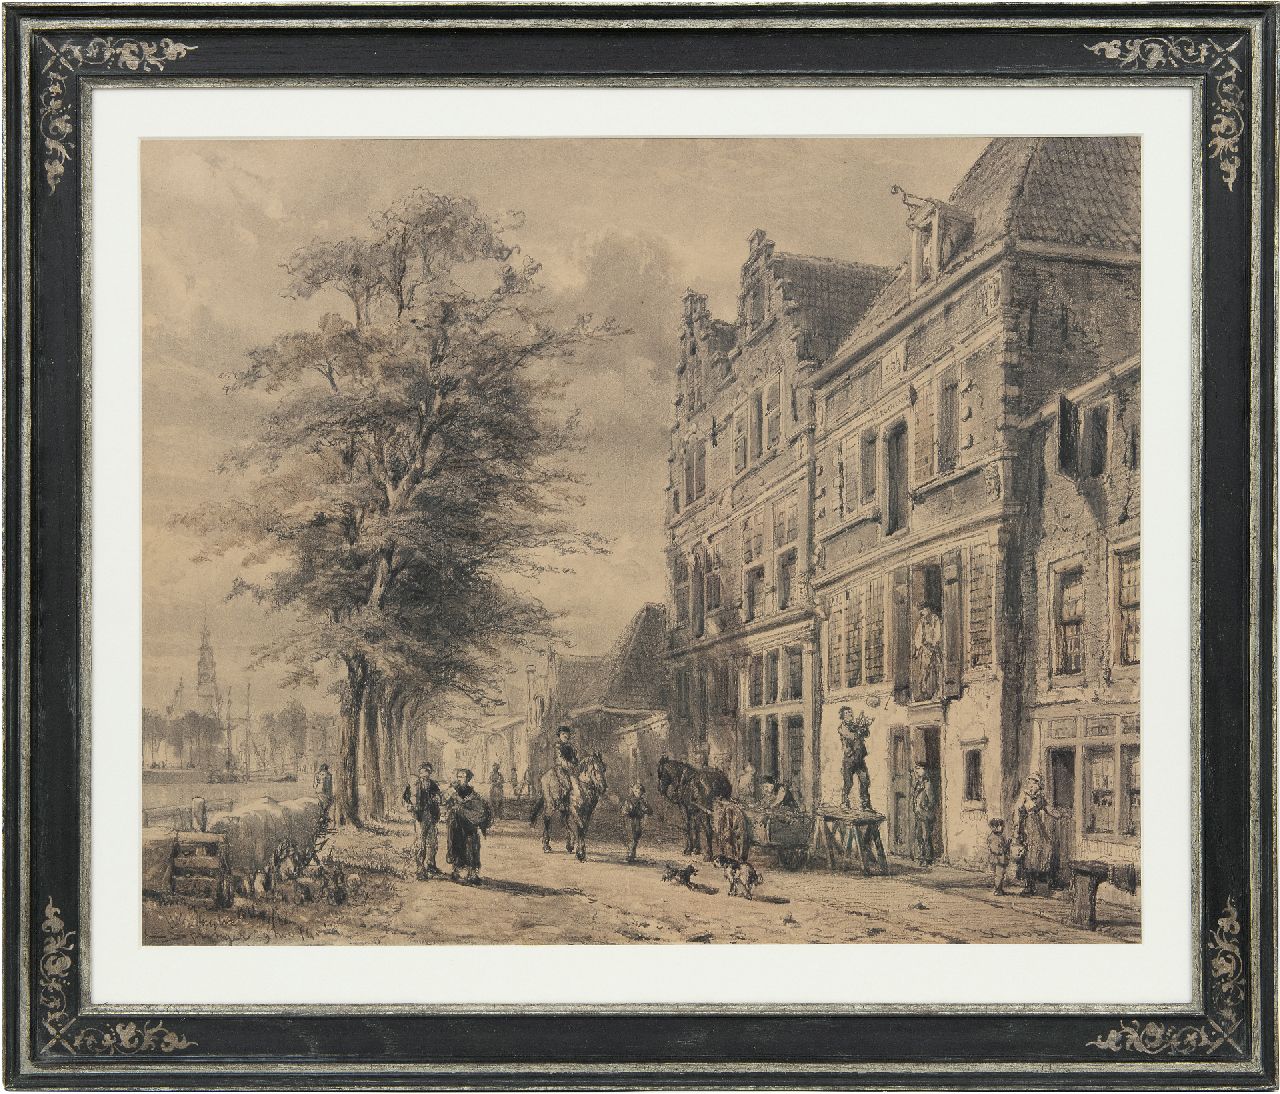 Springer C.  | Cornelis Springer, The Doelenkade in Hoorn, Holland, in summer, charcoal on paper 51.2 x 63.5 cm, signed l.l. and dated 29 nov. '74